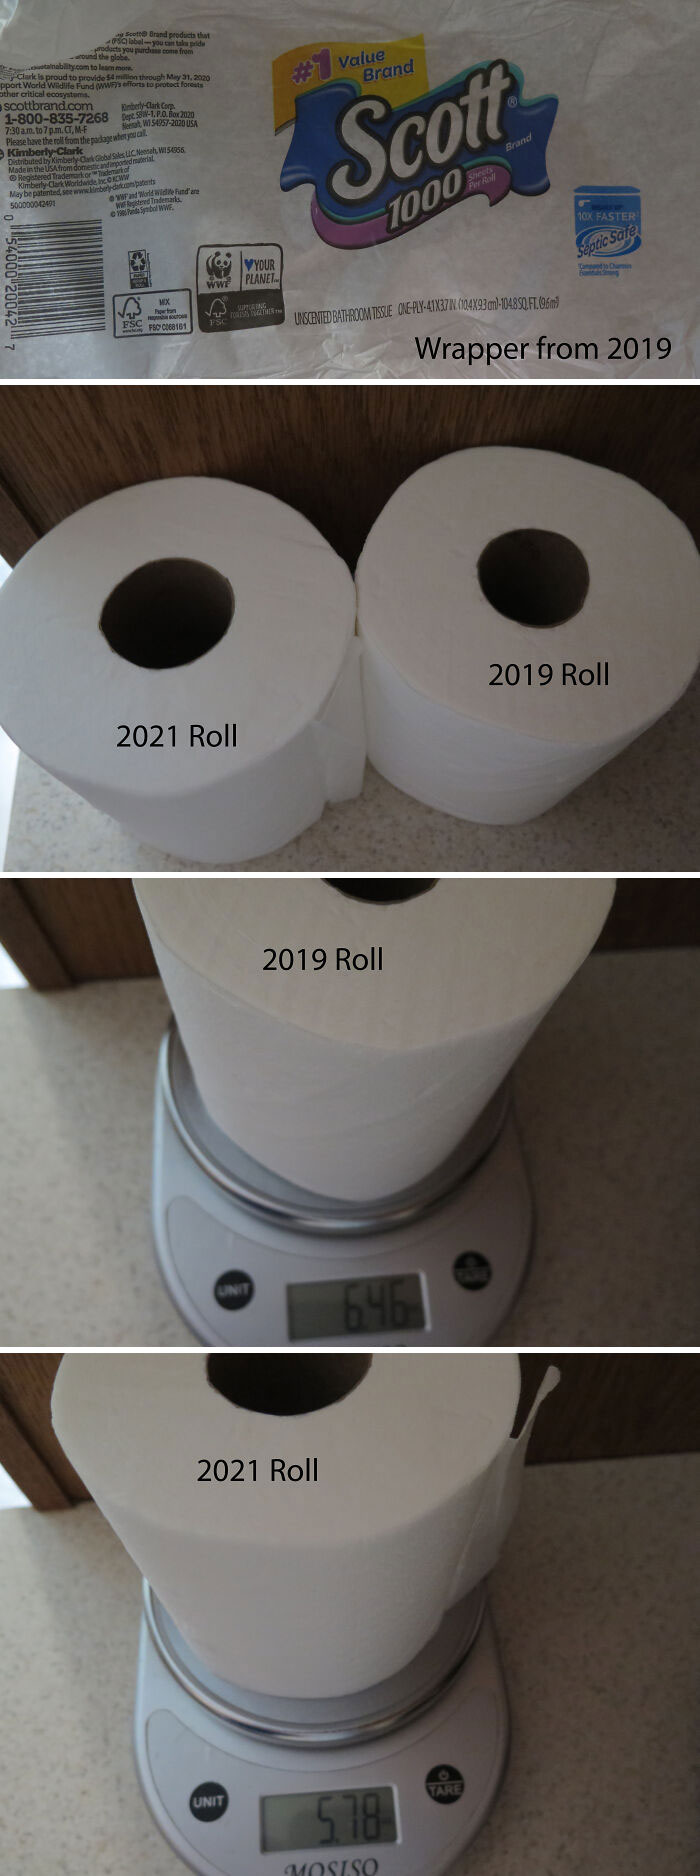 Scott Toilet Paper - 2019 vs. 2021 Comparison